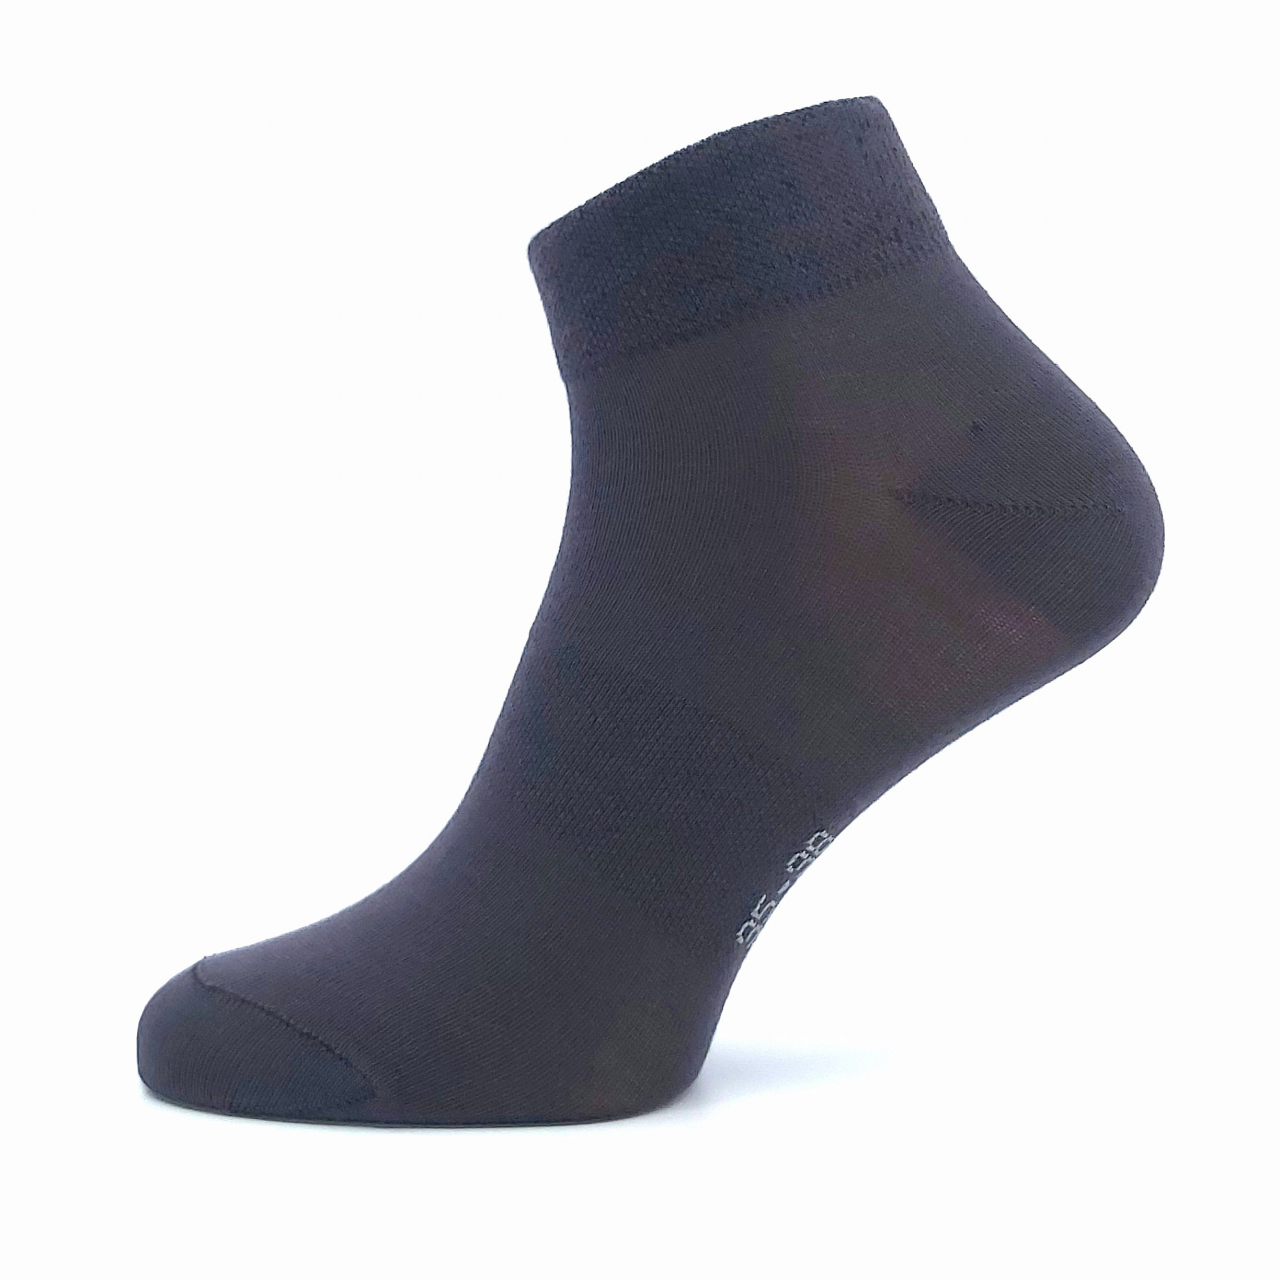 Ponožky unisex Lonka Raban - tmavě šedé, 43-46